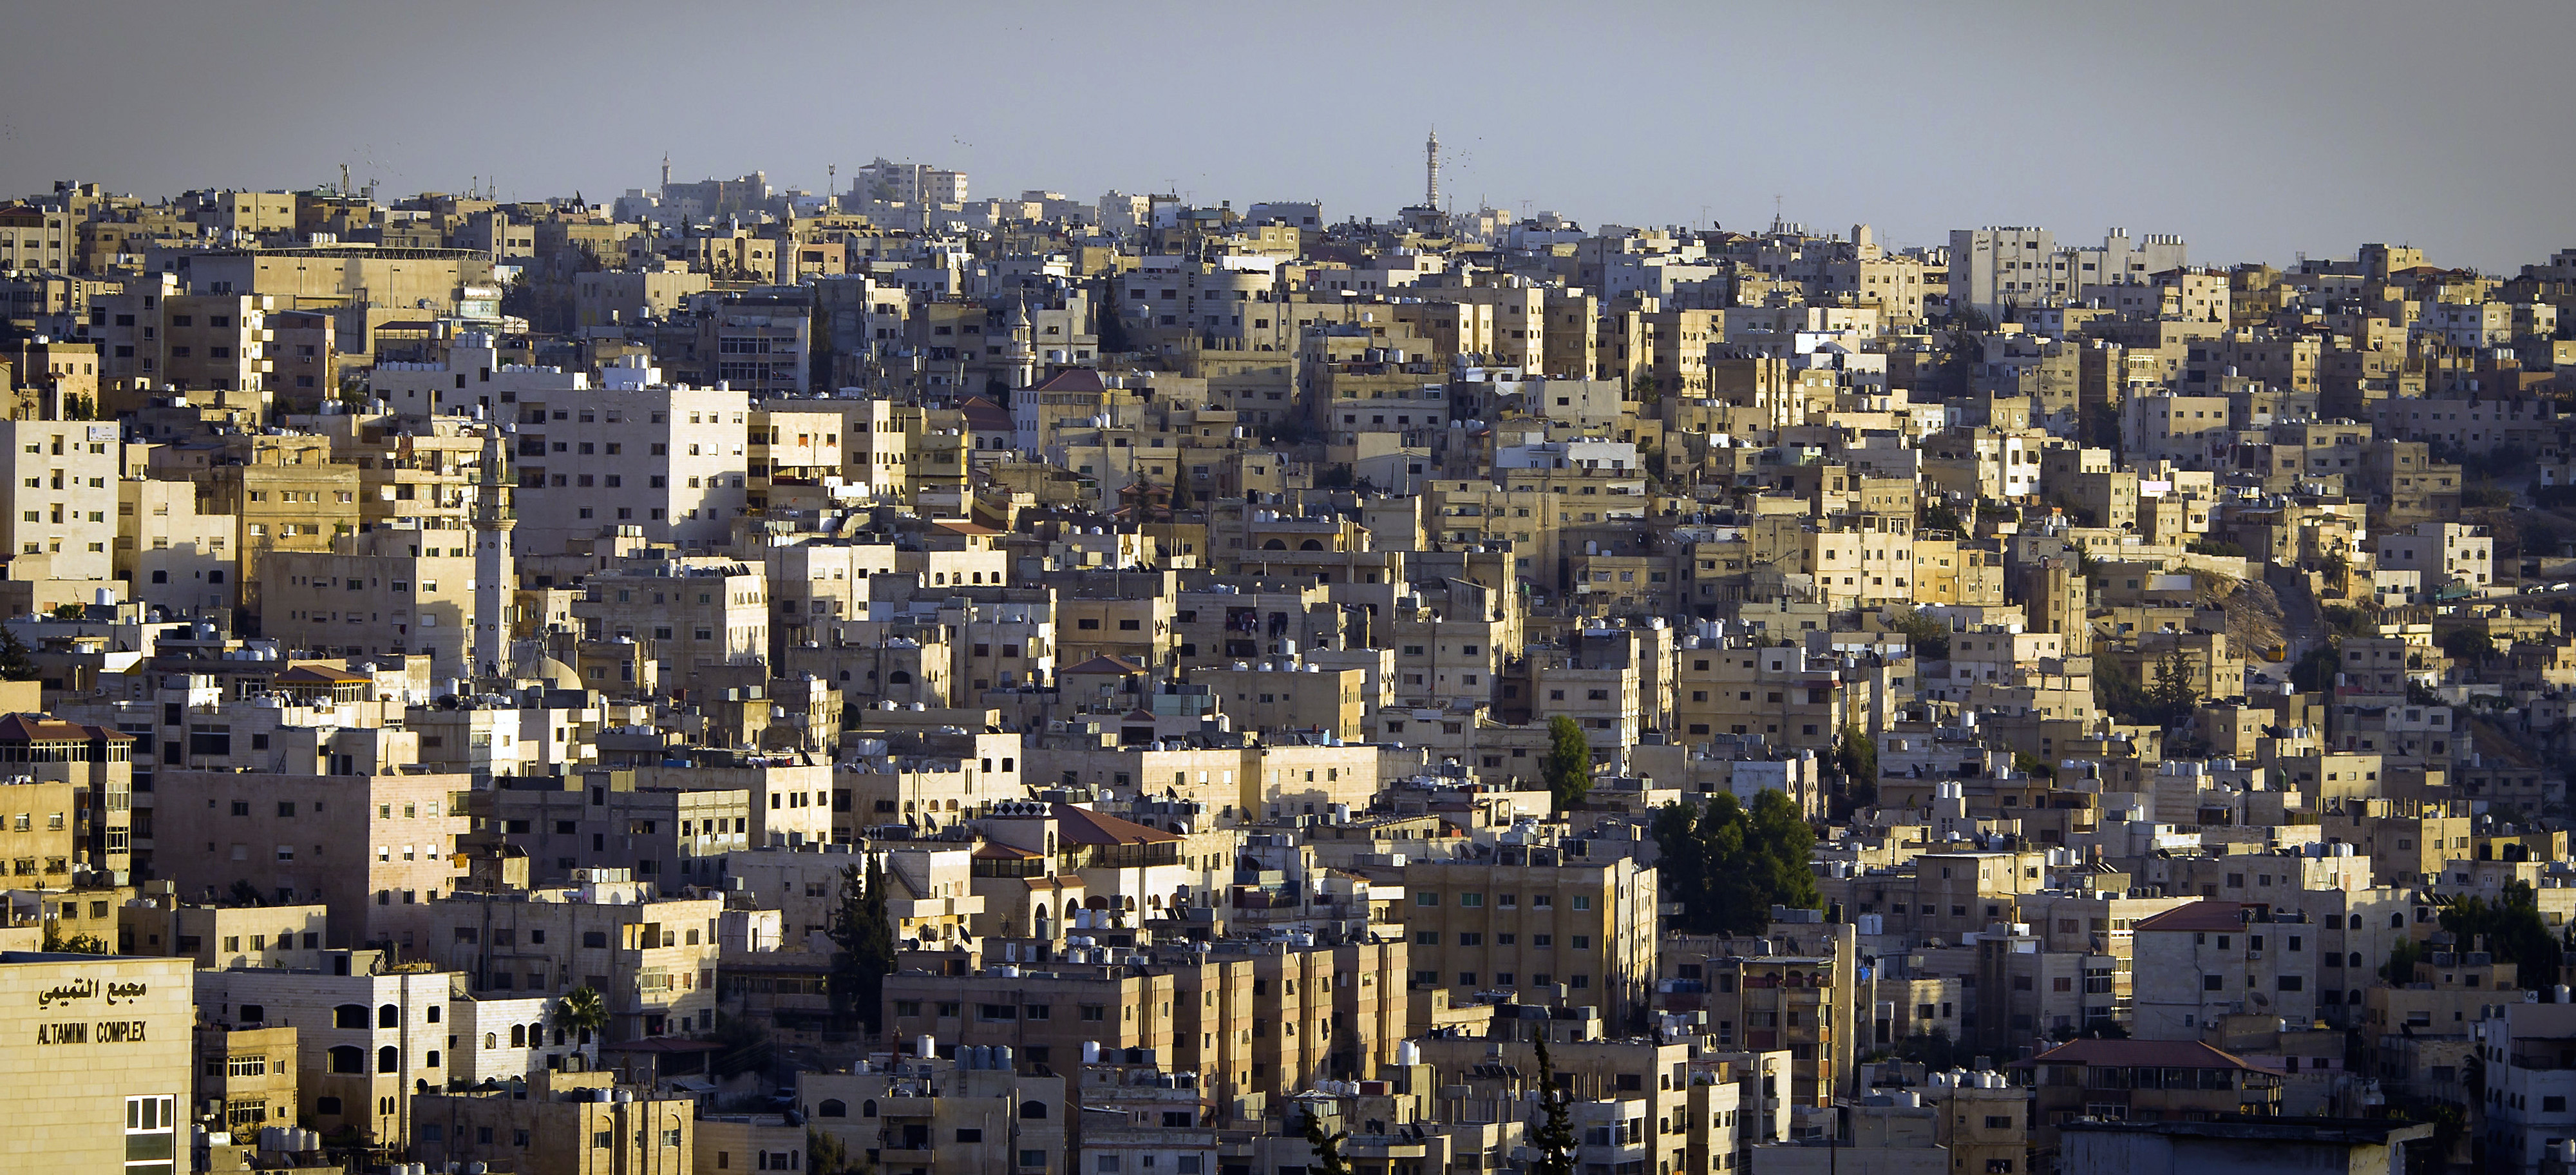 View of the Jordanian capital Amman